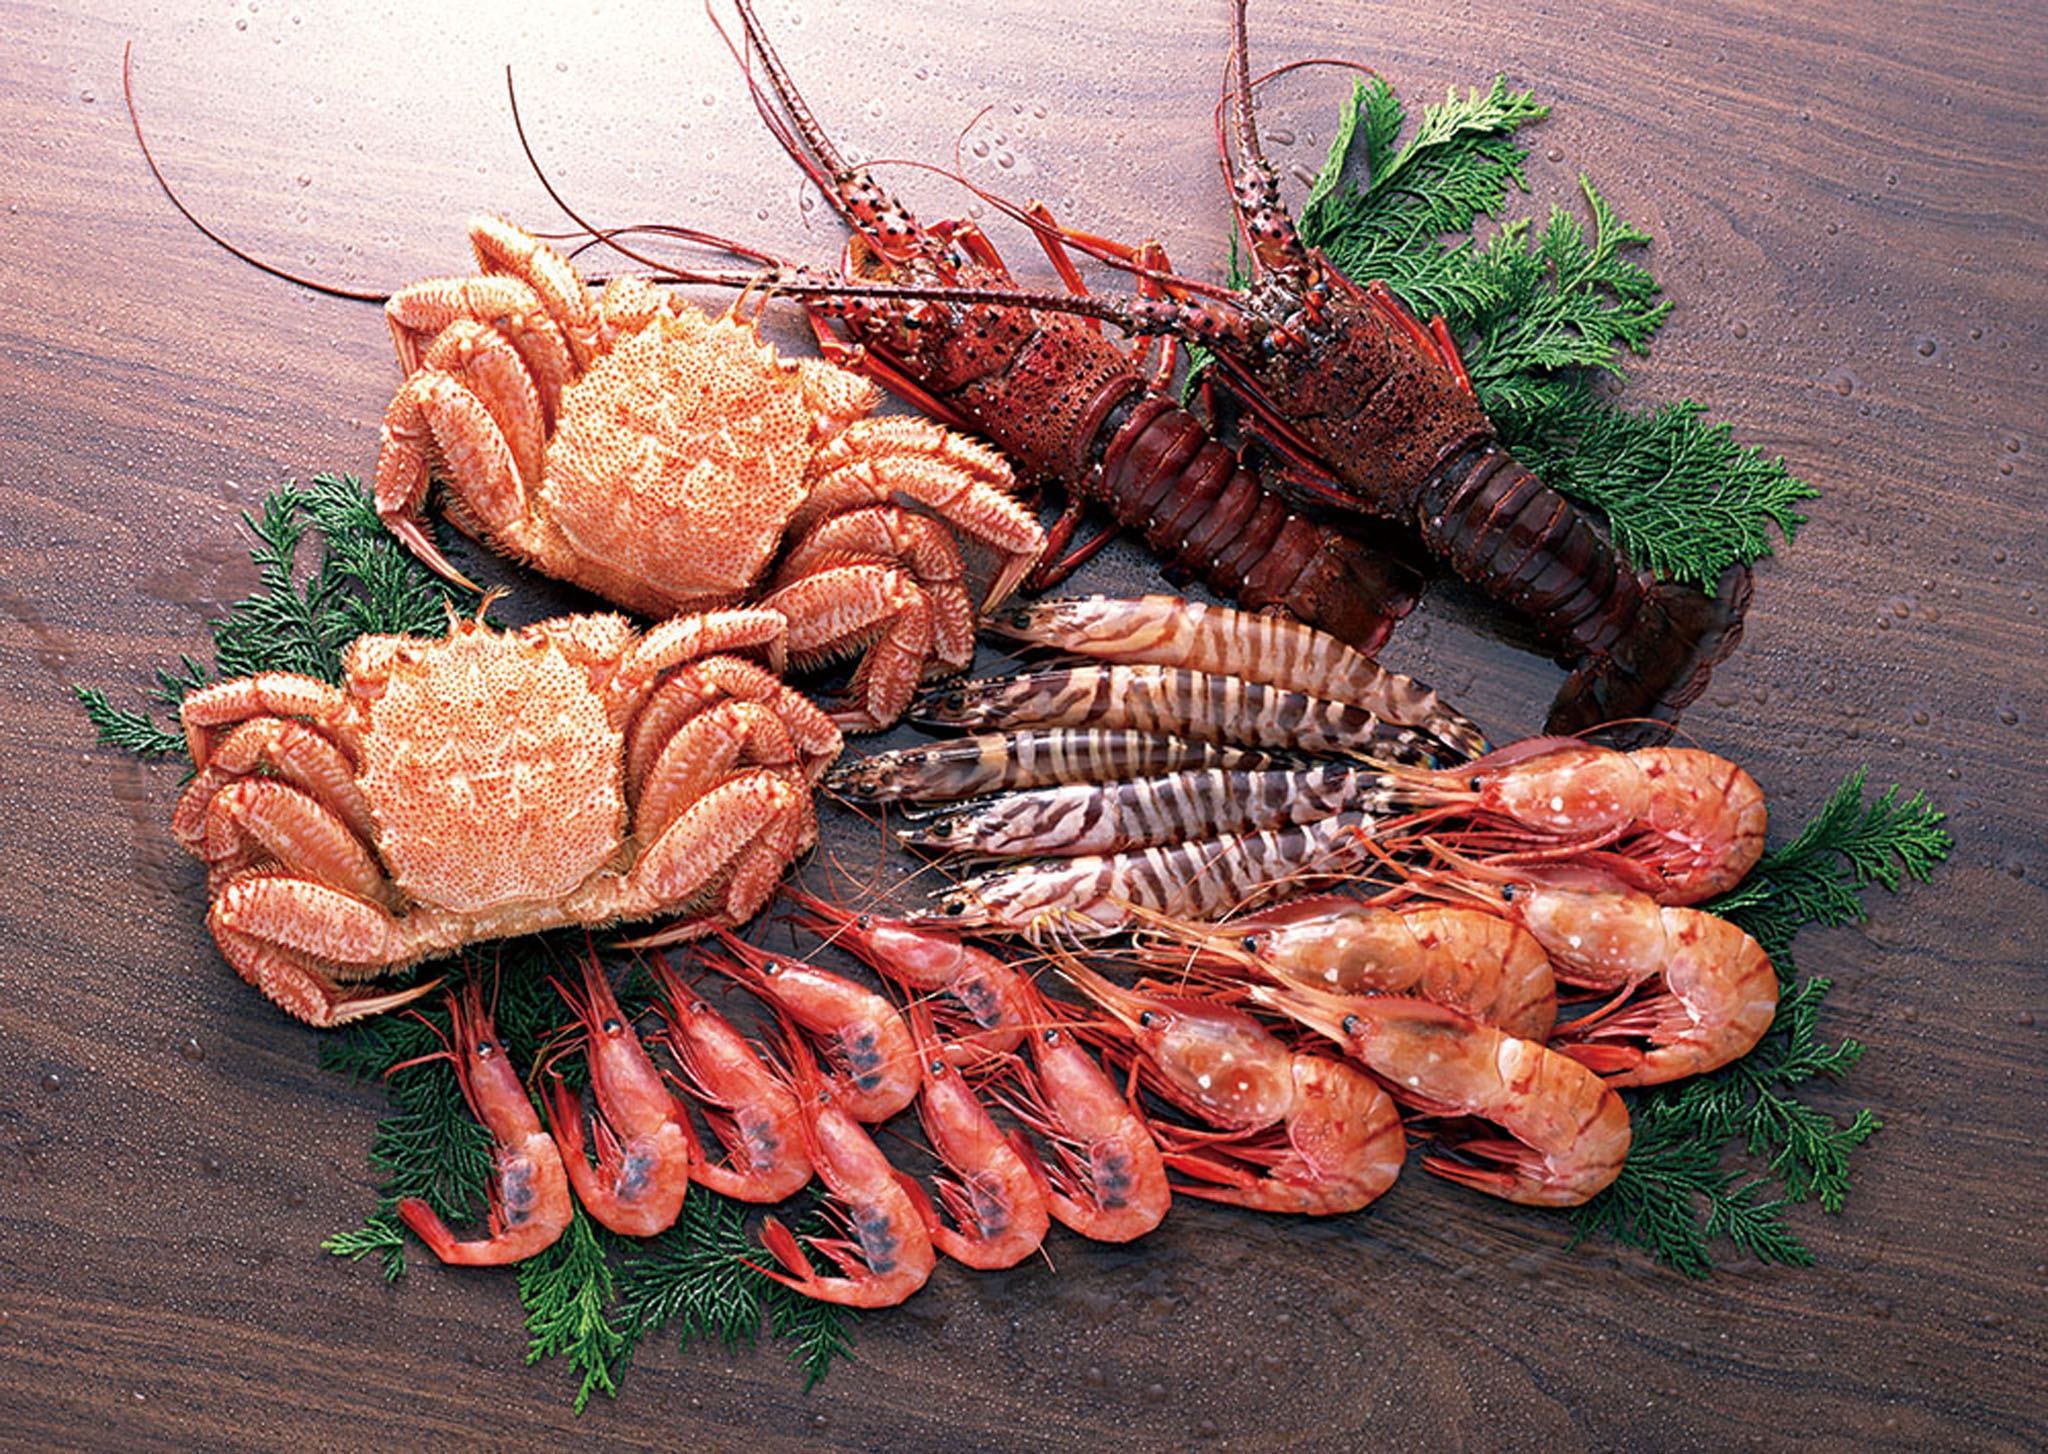 甲殼類動物等高膽固醇食物應適量。